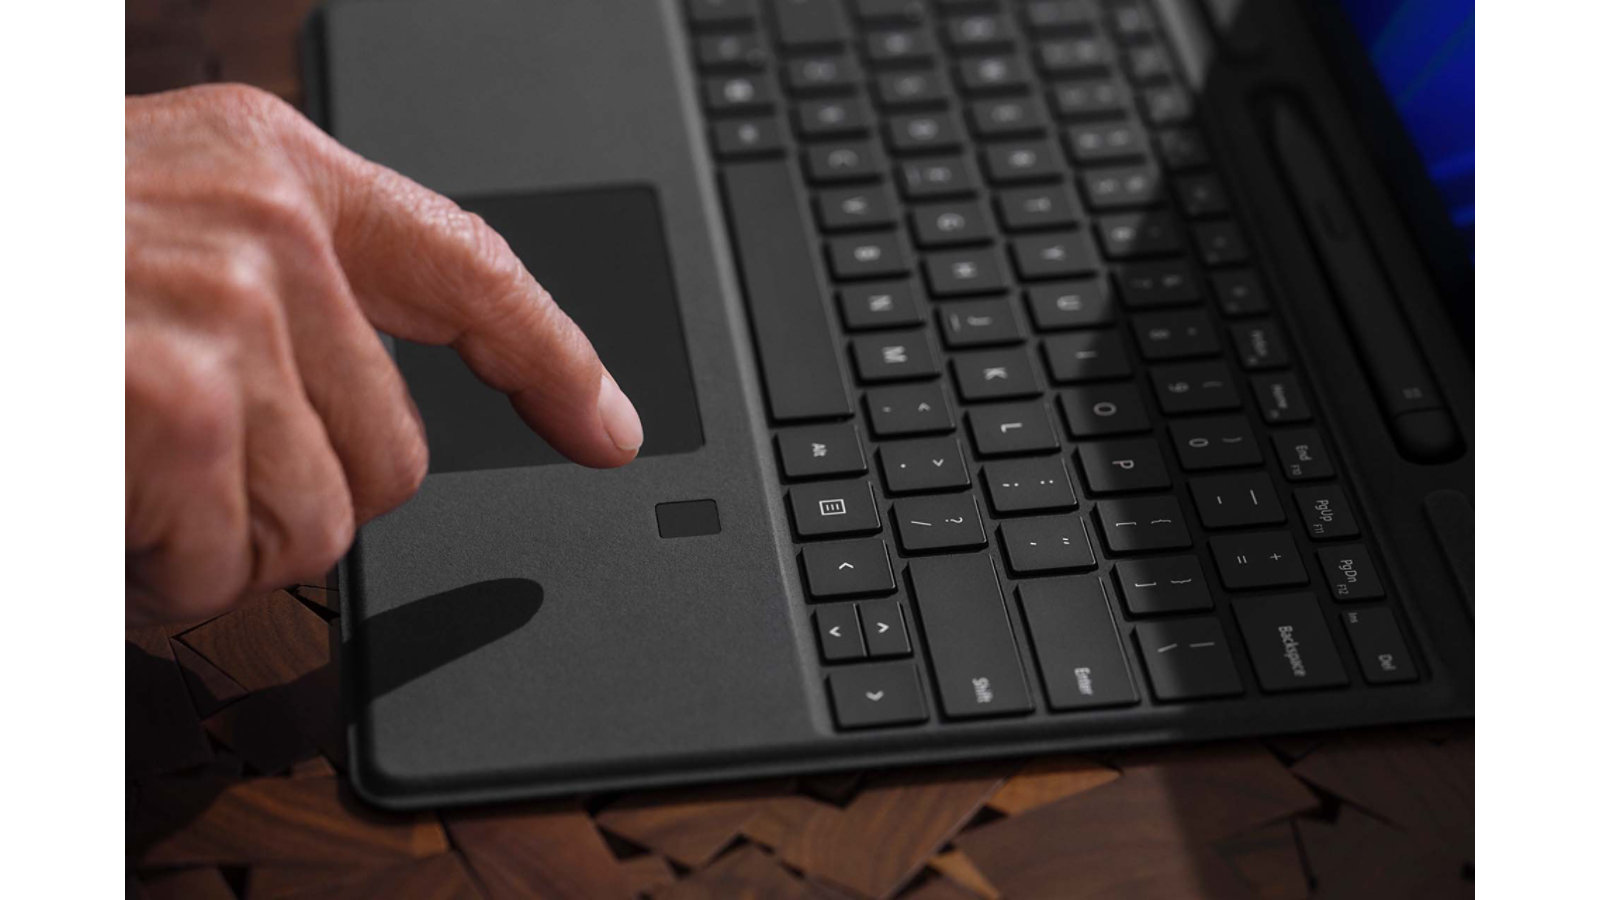 Jari orang tetikus di atas ciri daftar masuk biometrik pada Surface Pro Signature Keyboard